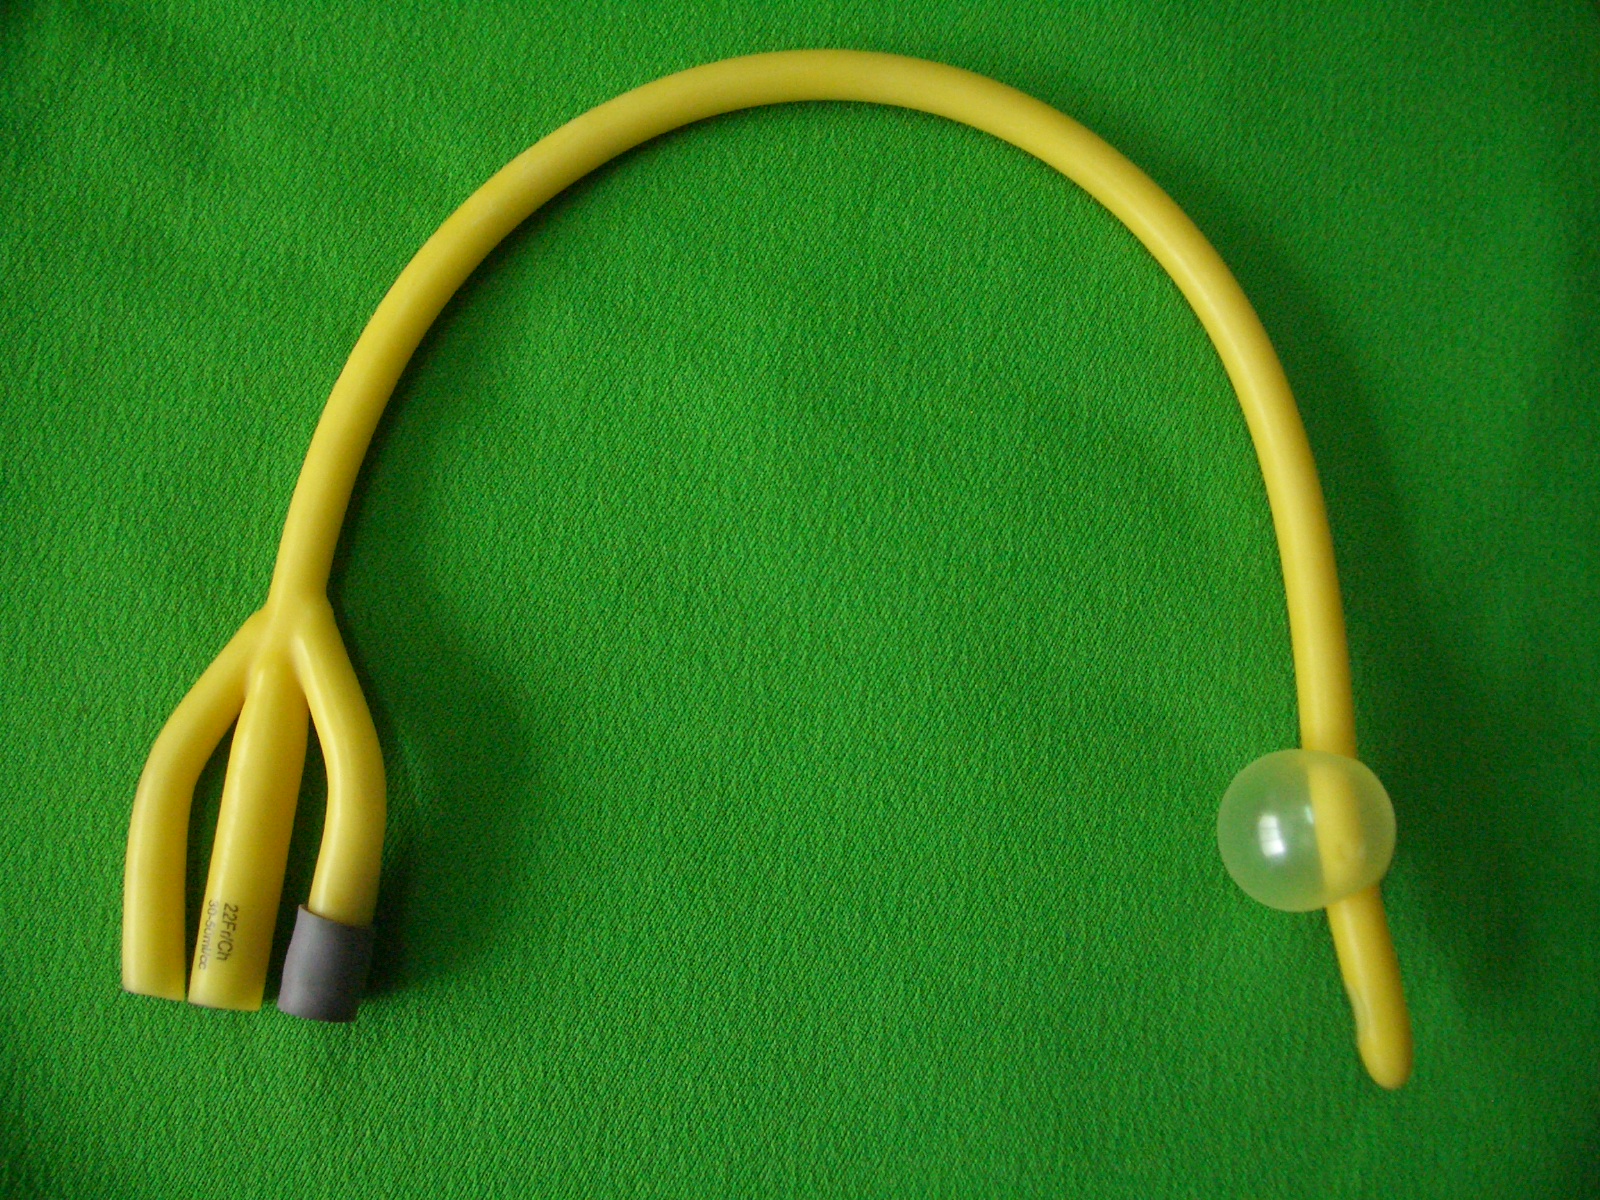 foley catheter documentation example